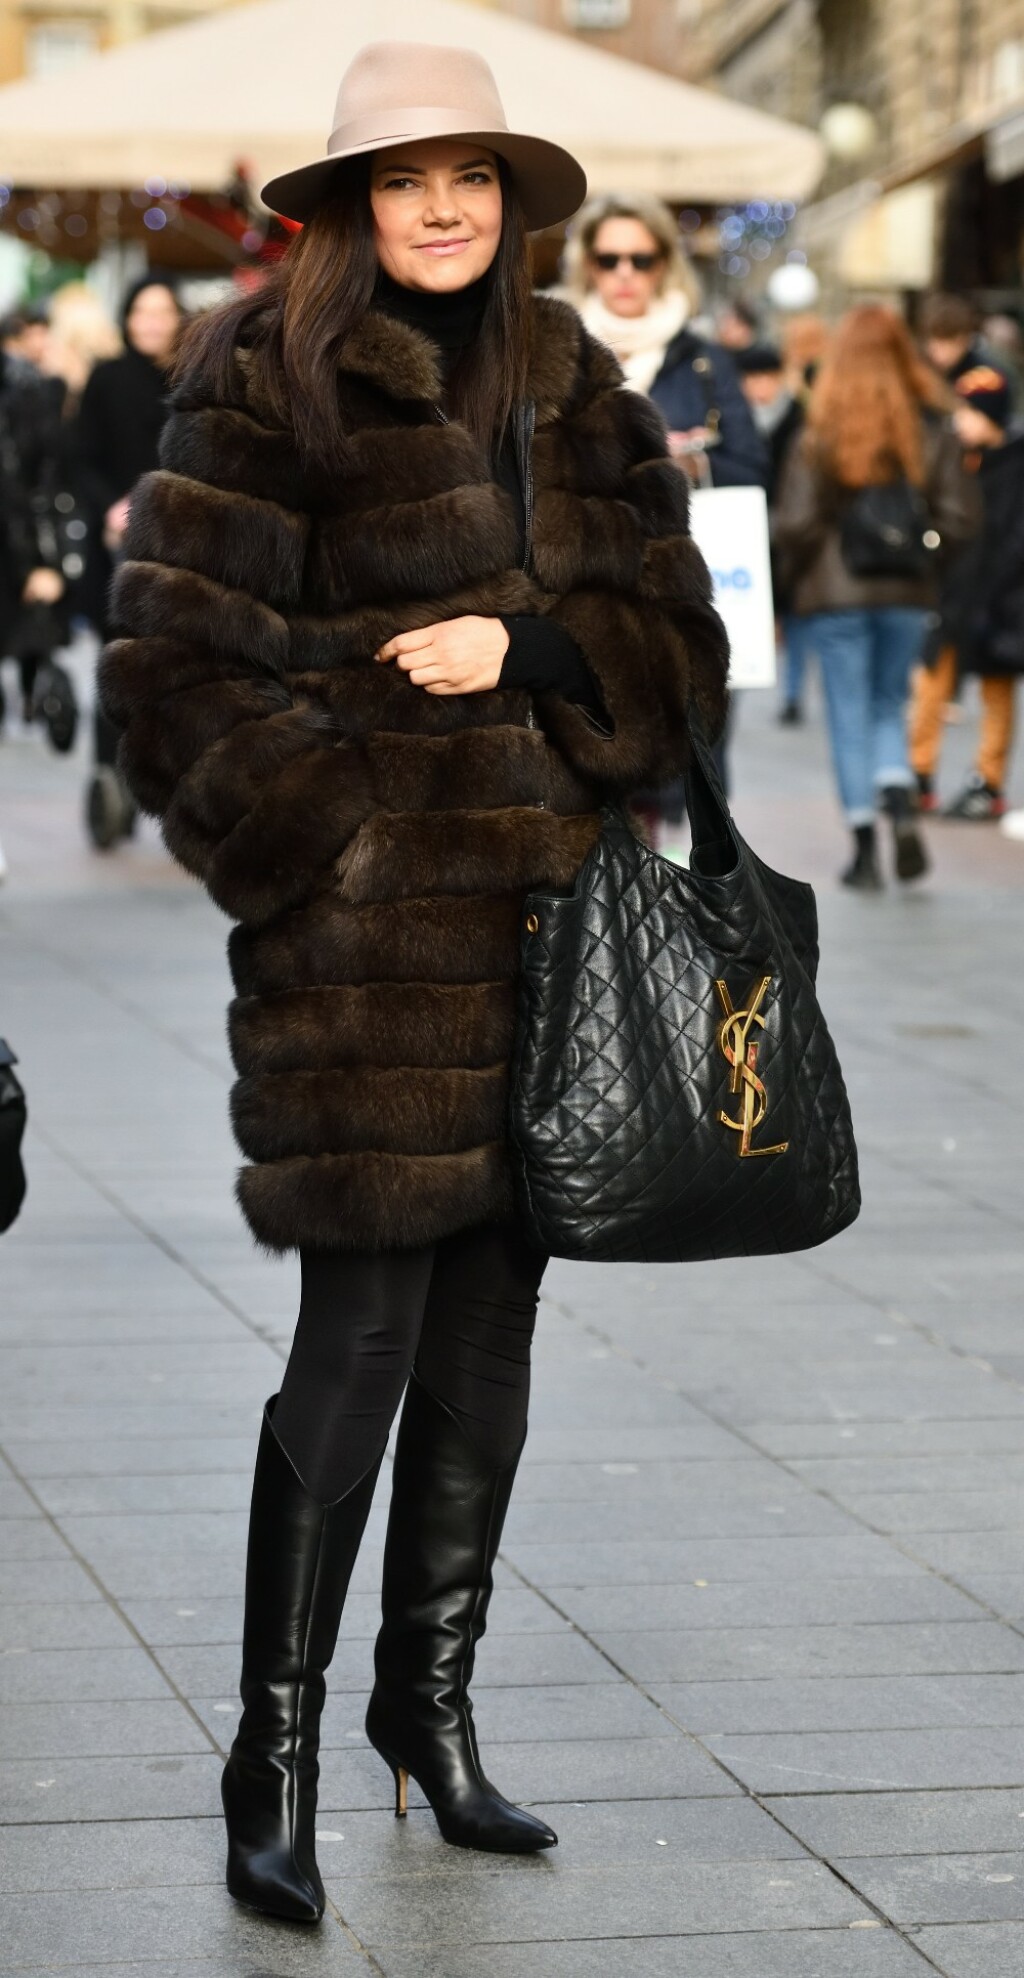 Zgodna dama iz Zagreba s torbom Icare modne kuće Saint Laurent